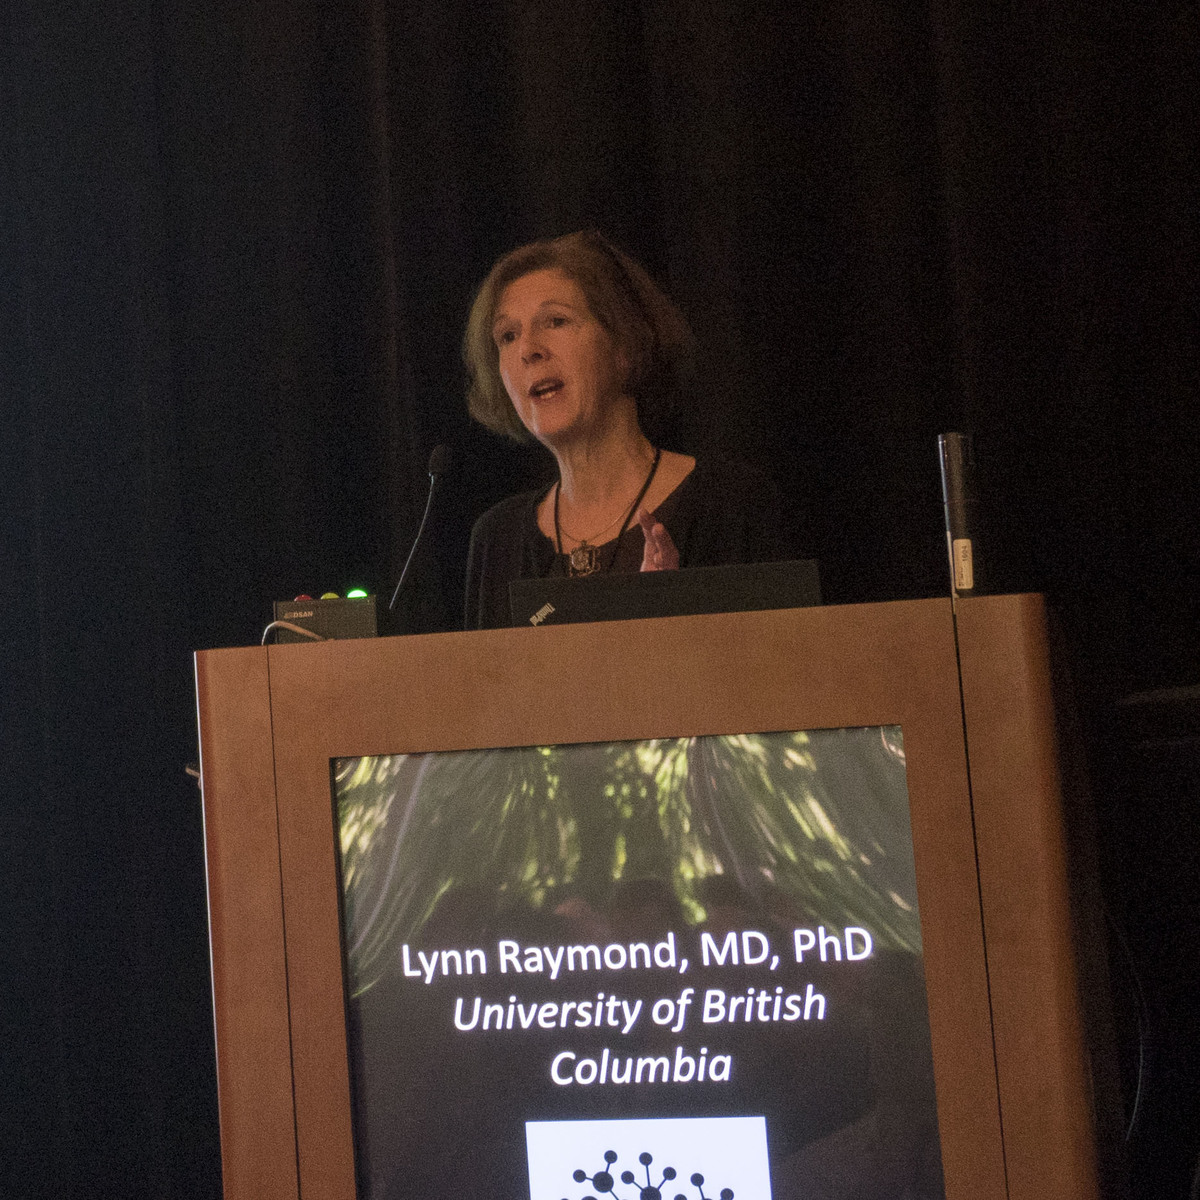 El co-cultivo de Lynn Raymond con células corticales y estriatales proporciona una manera de probar fármacos para la EH  